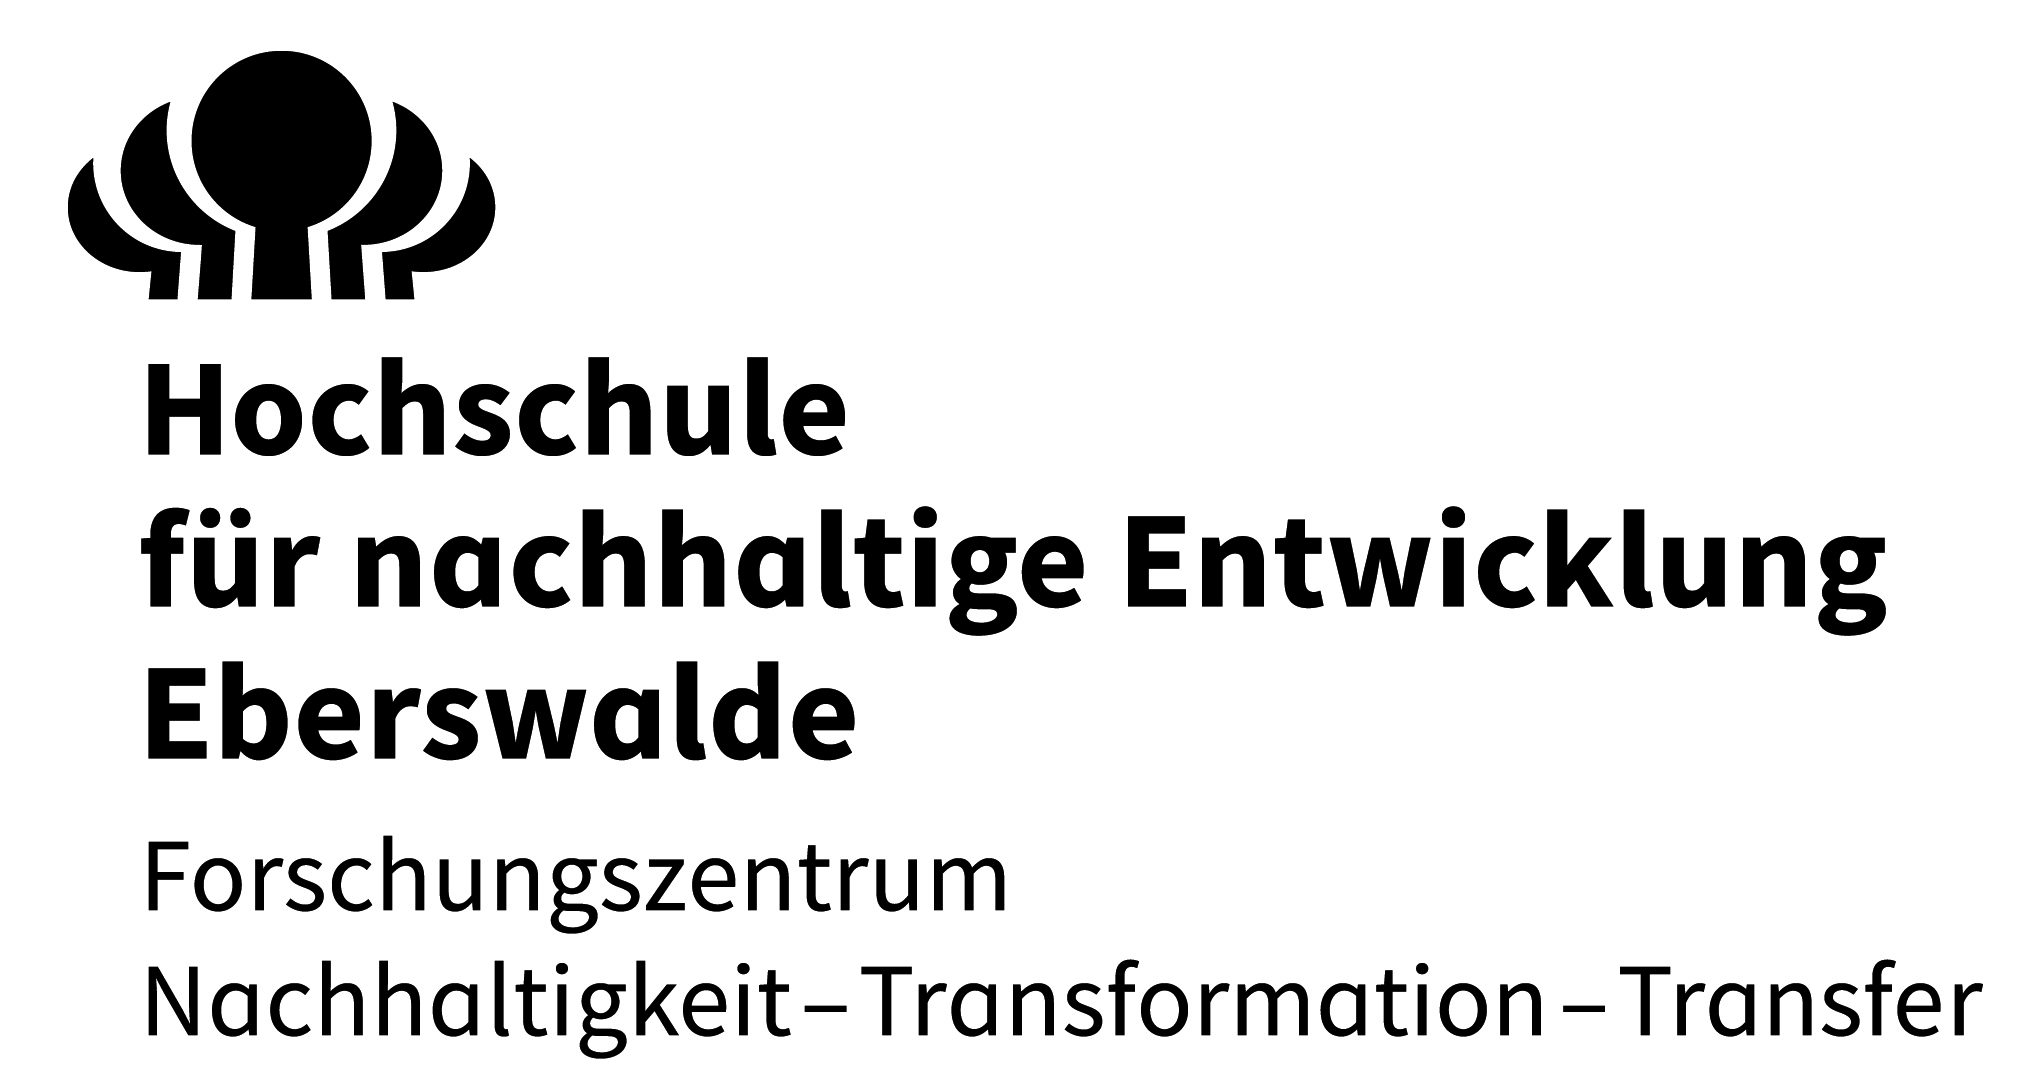 Hochschule für nachhaltige Entwicklung in Eberswalde (HNEE)